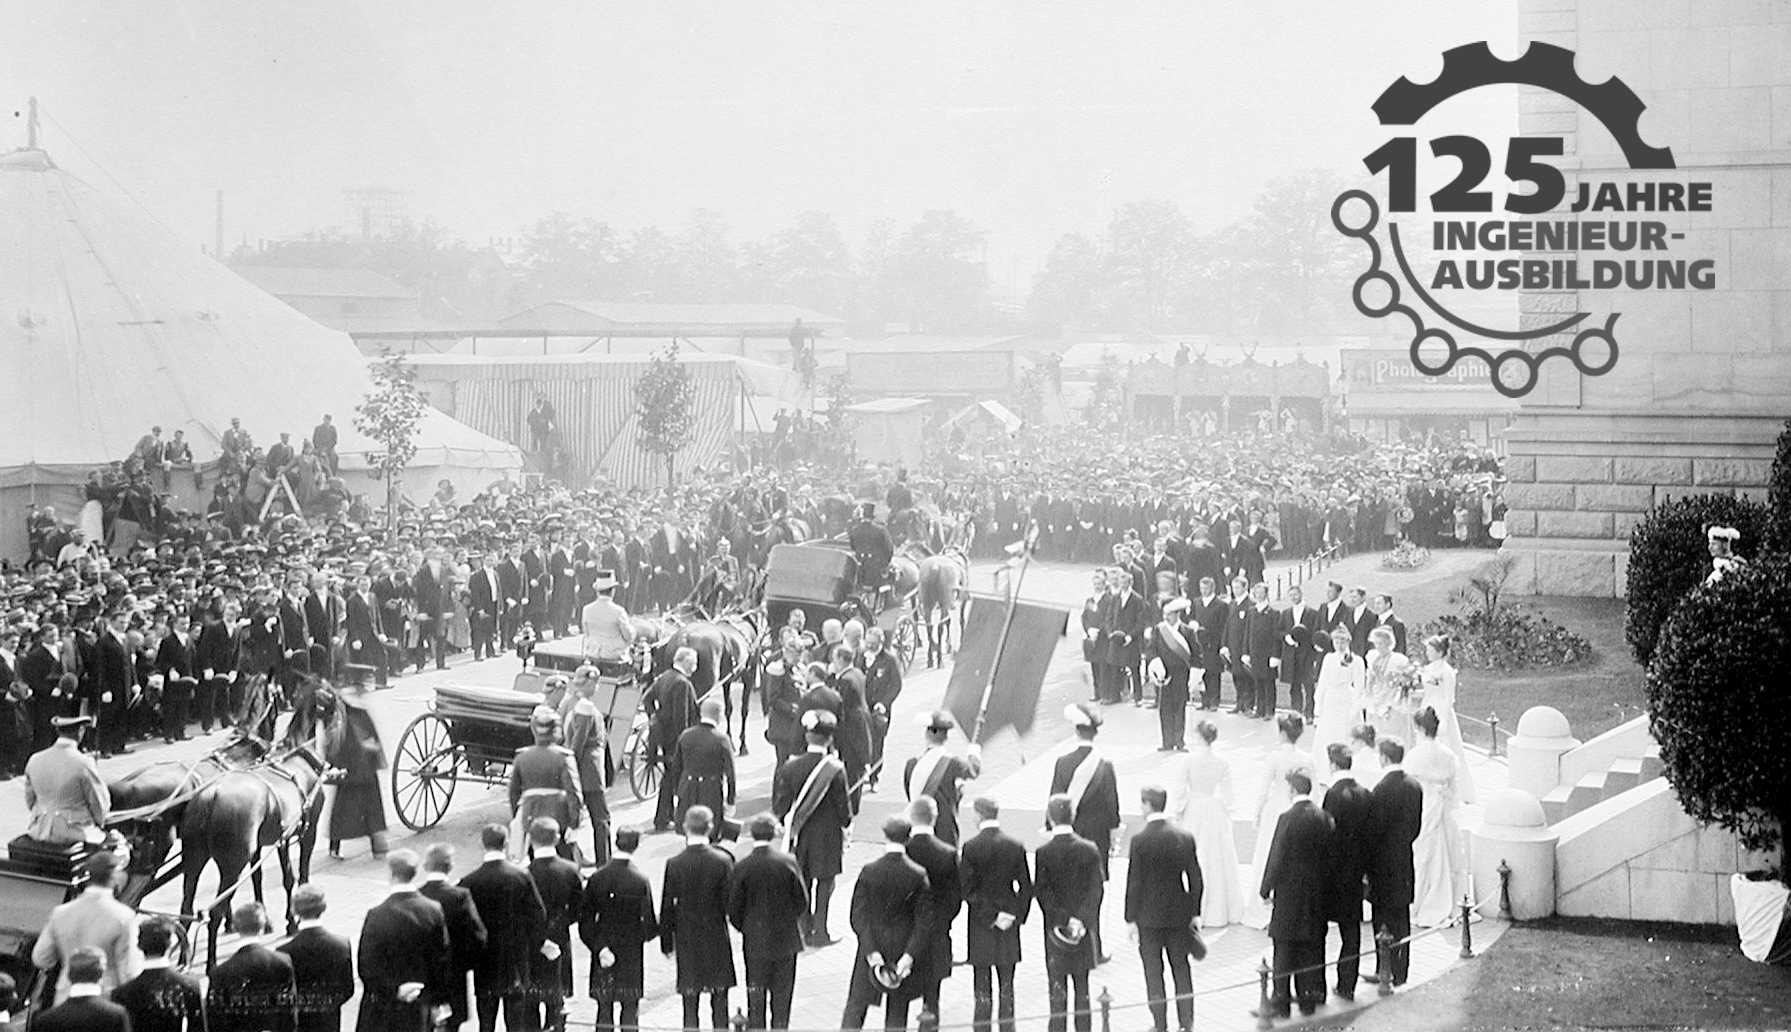 Foto: Einweihung des Gebäudes Lessingstraße 1903, Schwarz-Weiß-Fotografie, große Menschenmenge